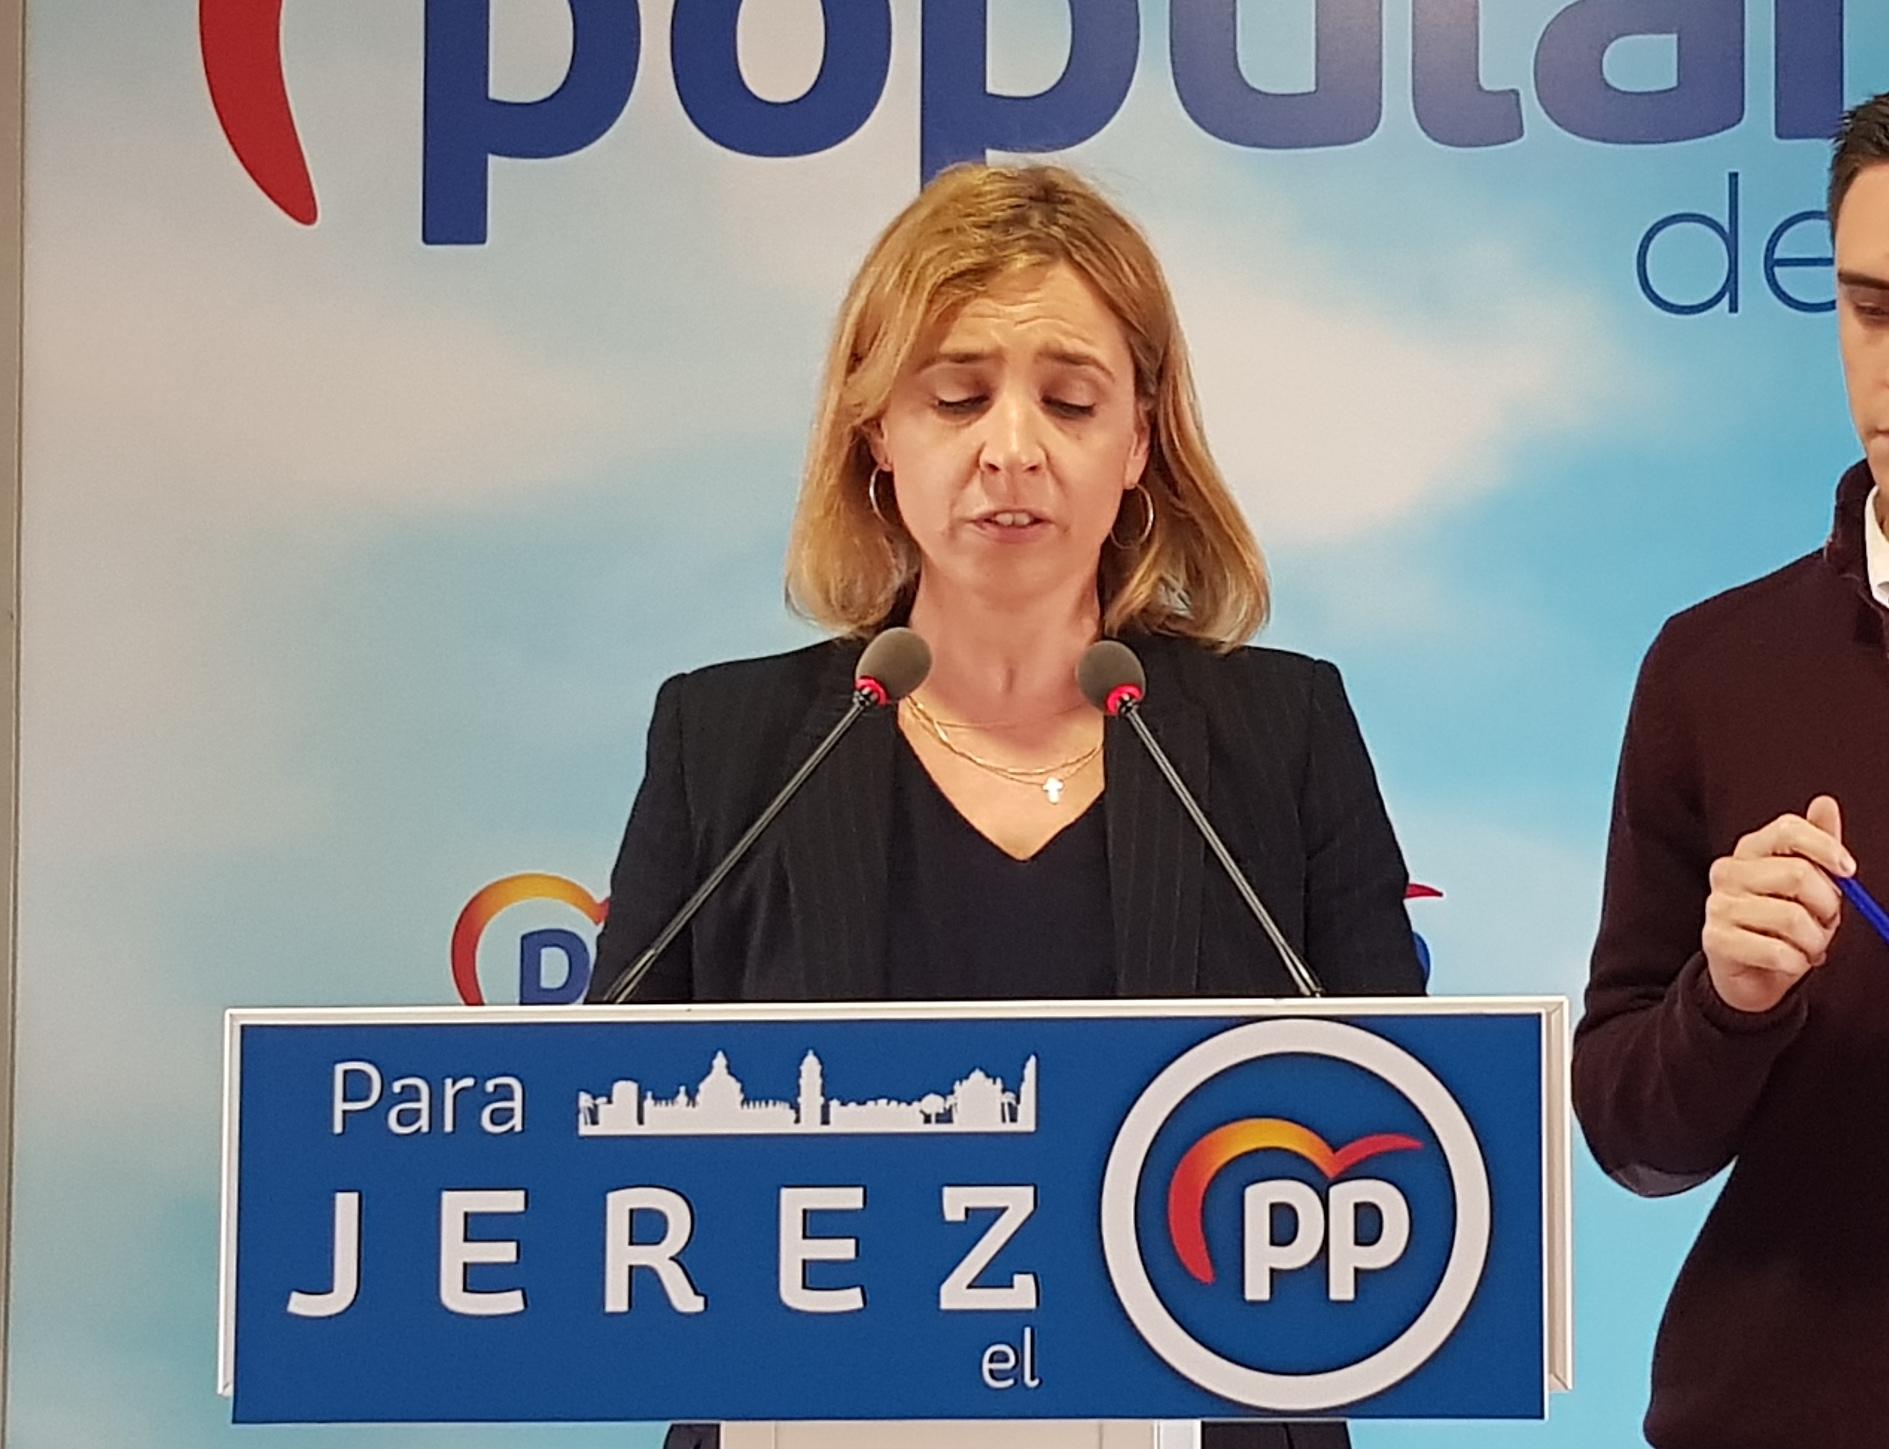 Almudena Martínez (PP): "El PSOE es líder en recortar, privatizar y no invertir en la sanidad pública"